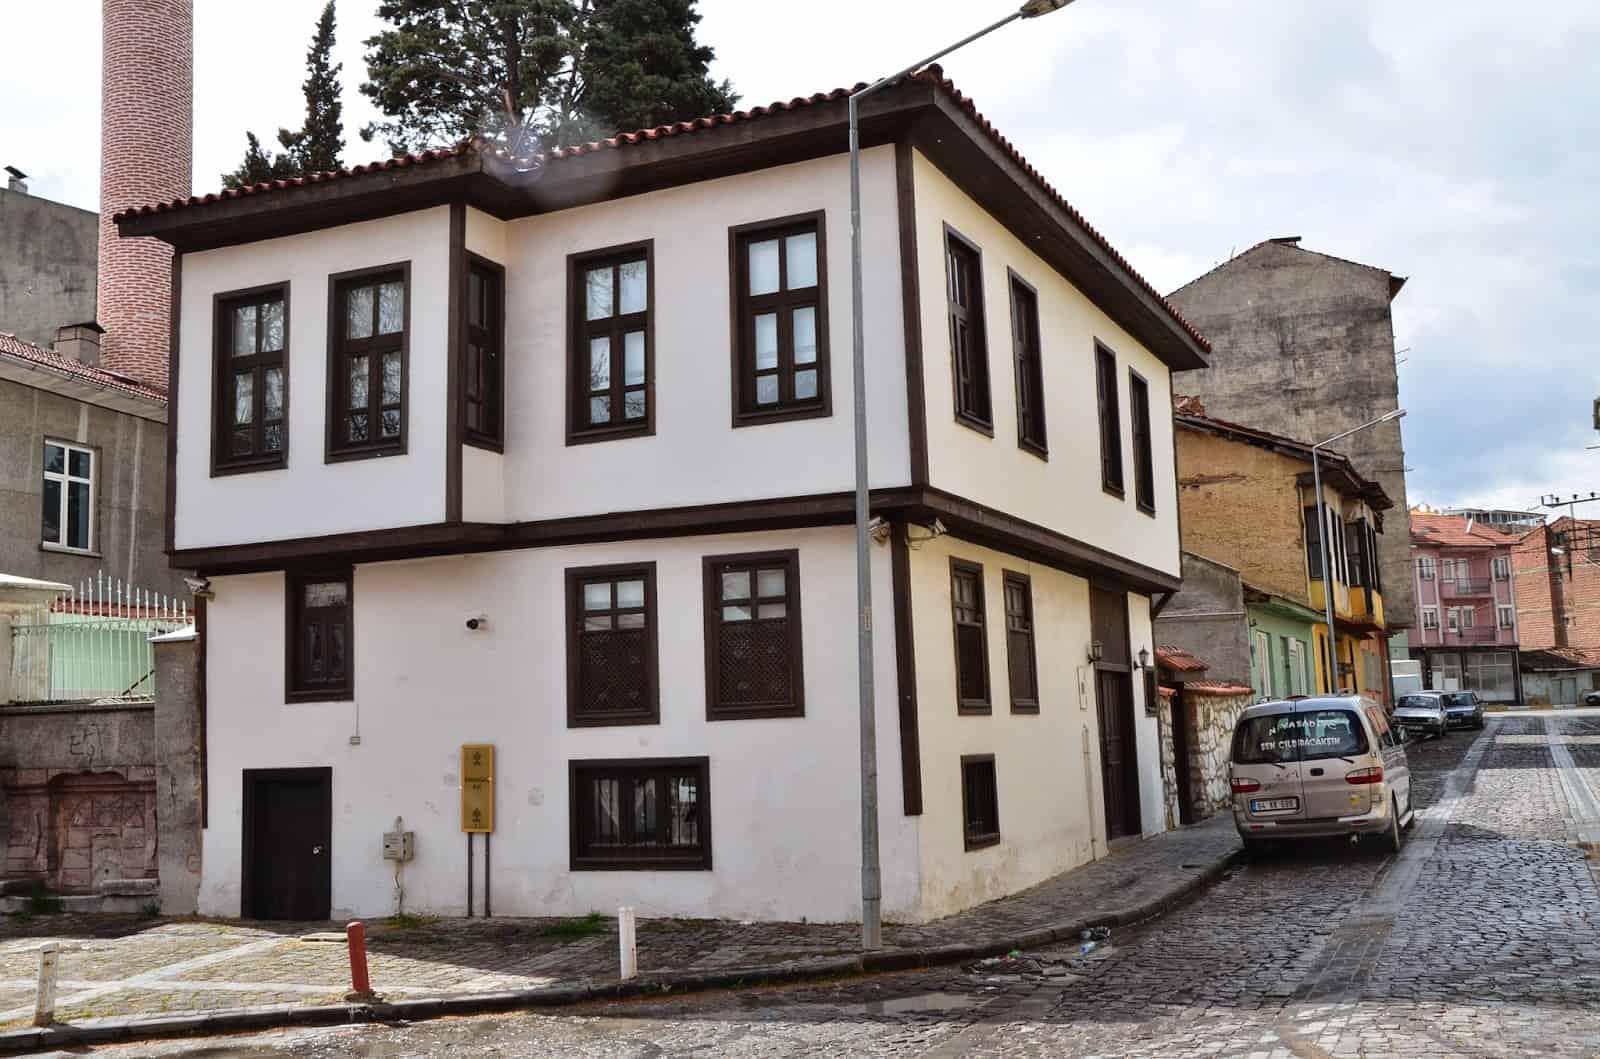 Karaağaç House in Uşak, Turkey